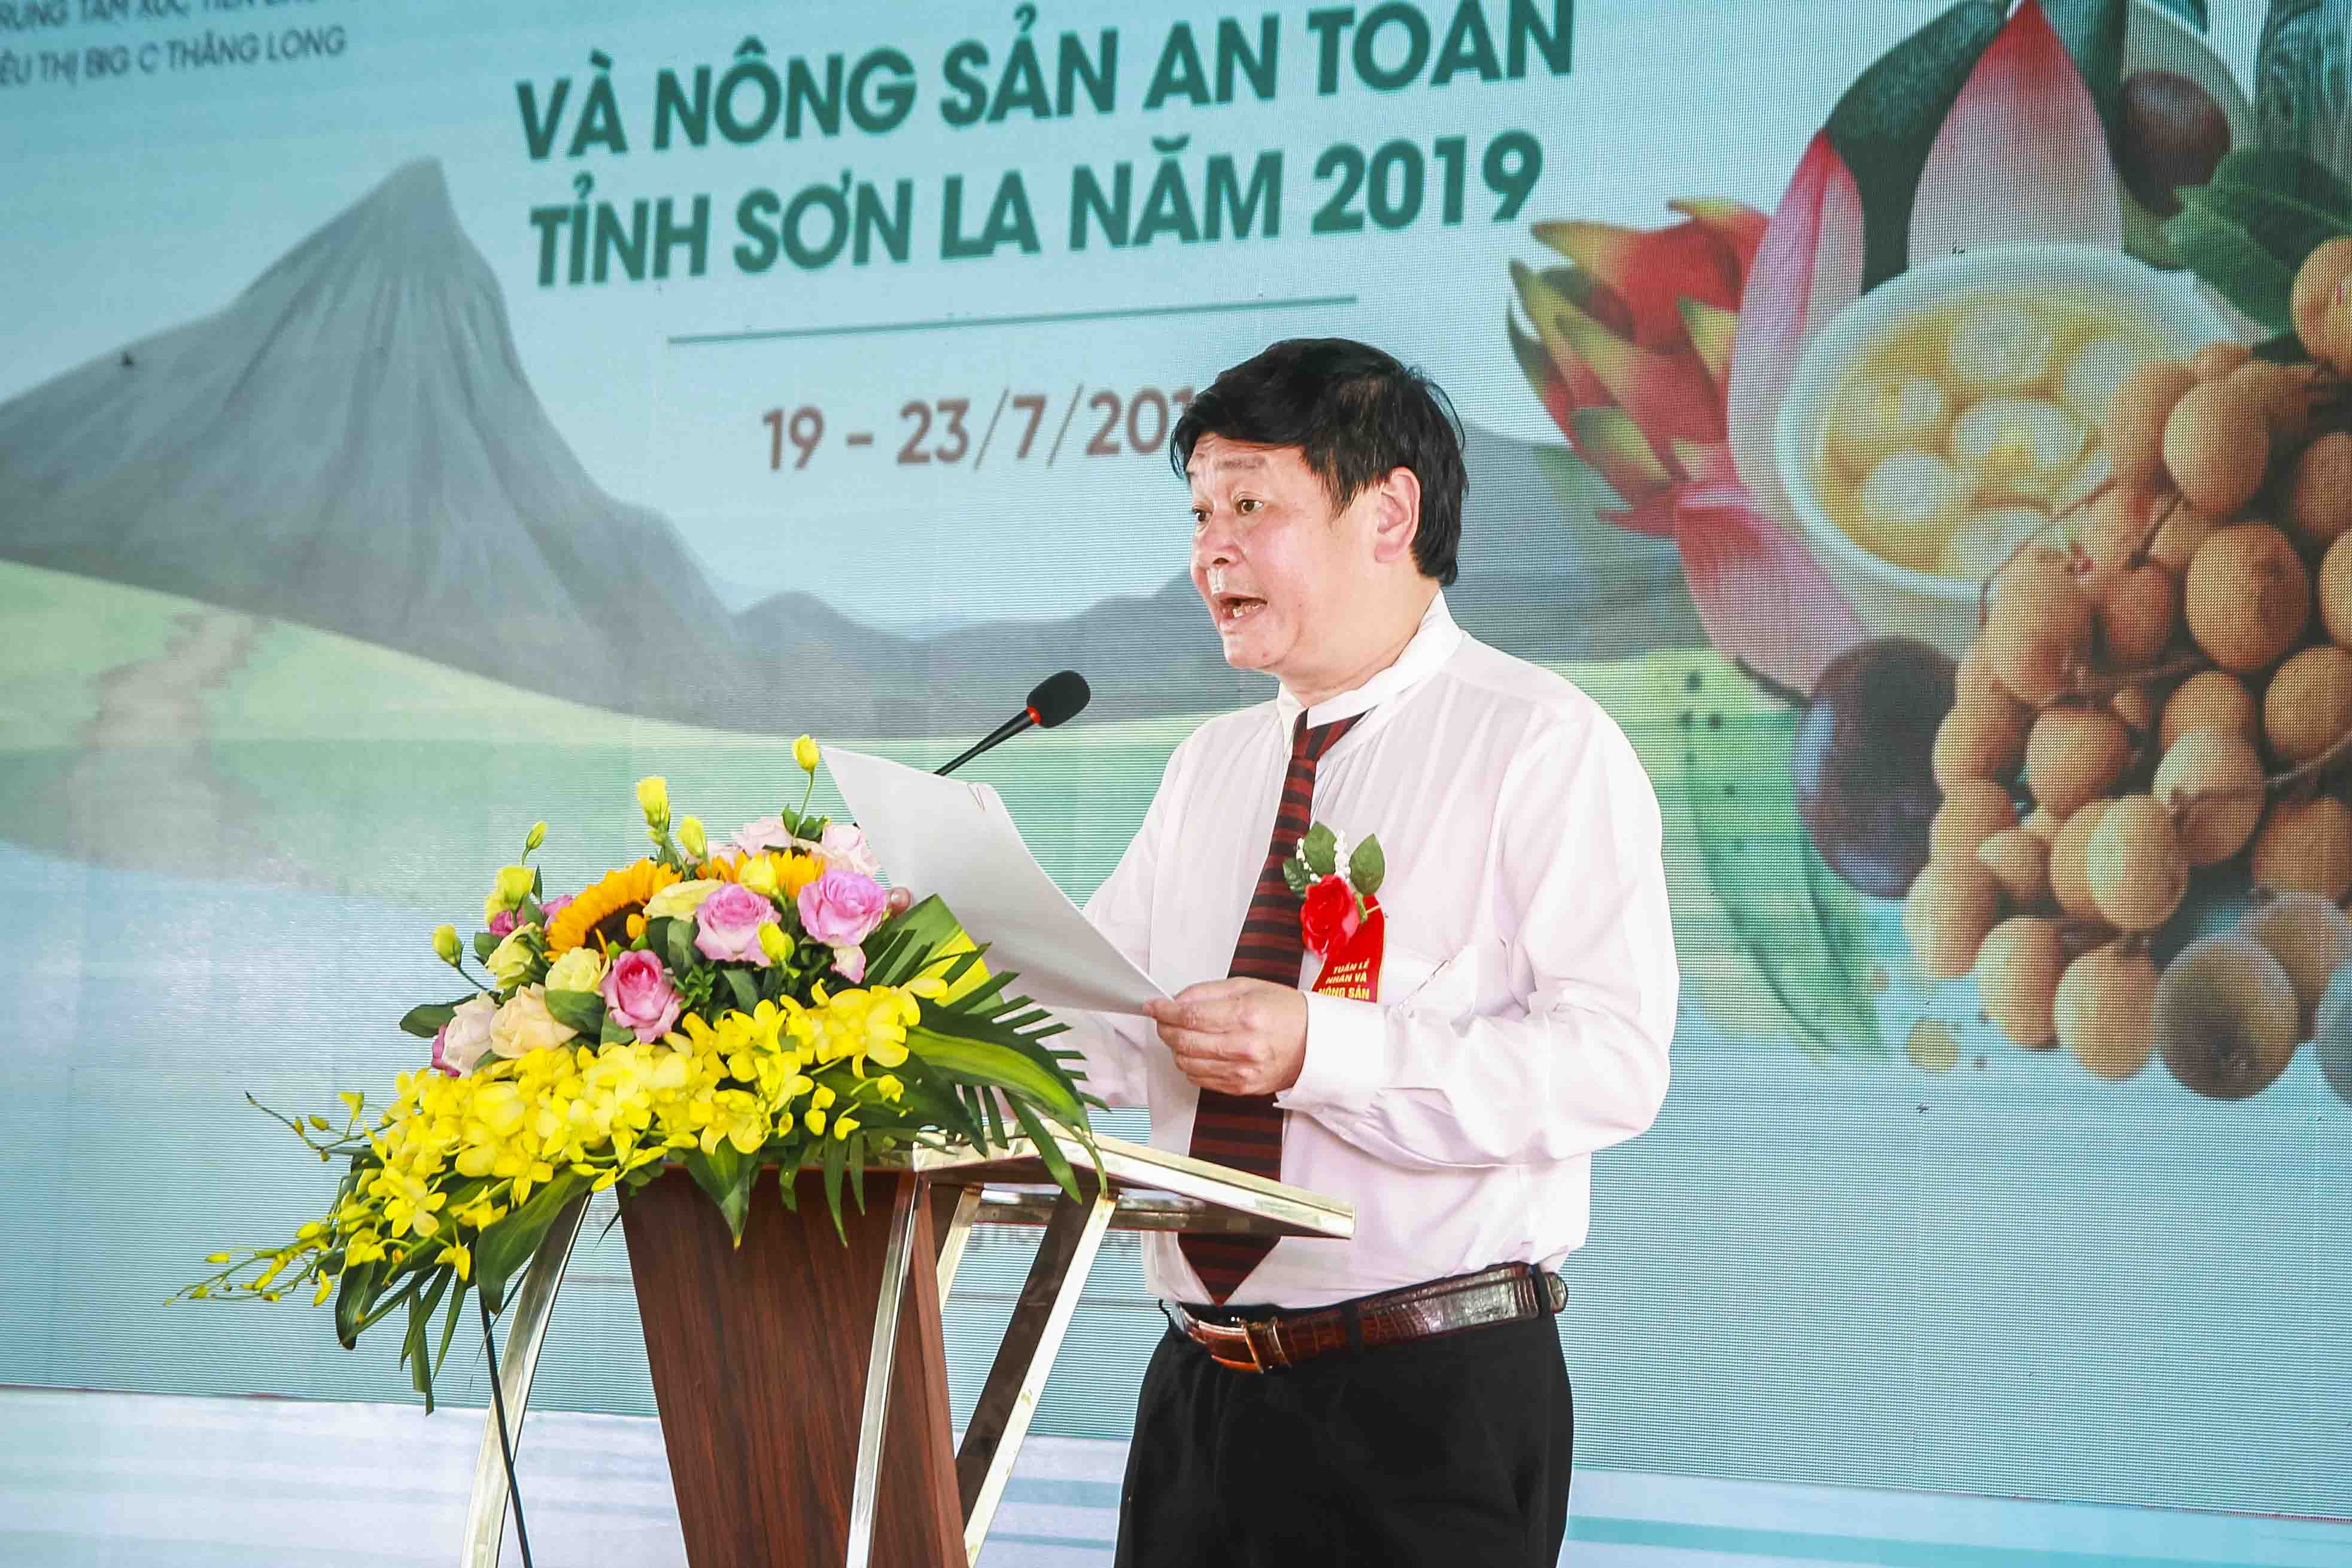 Phó Giám đốc Sở Kế hoạch và Đầu tư, Giám đốc Trung tâm Xúc tiến đầu tư tỉnh Sơn La Vũ Đức Thuận